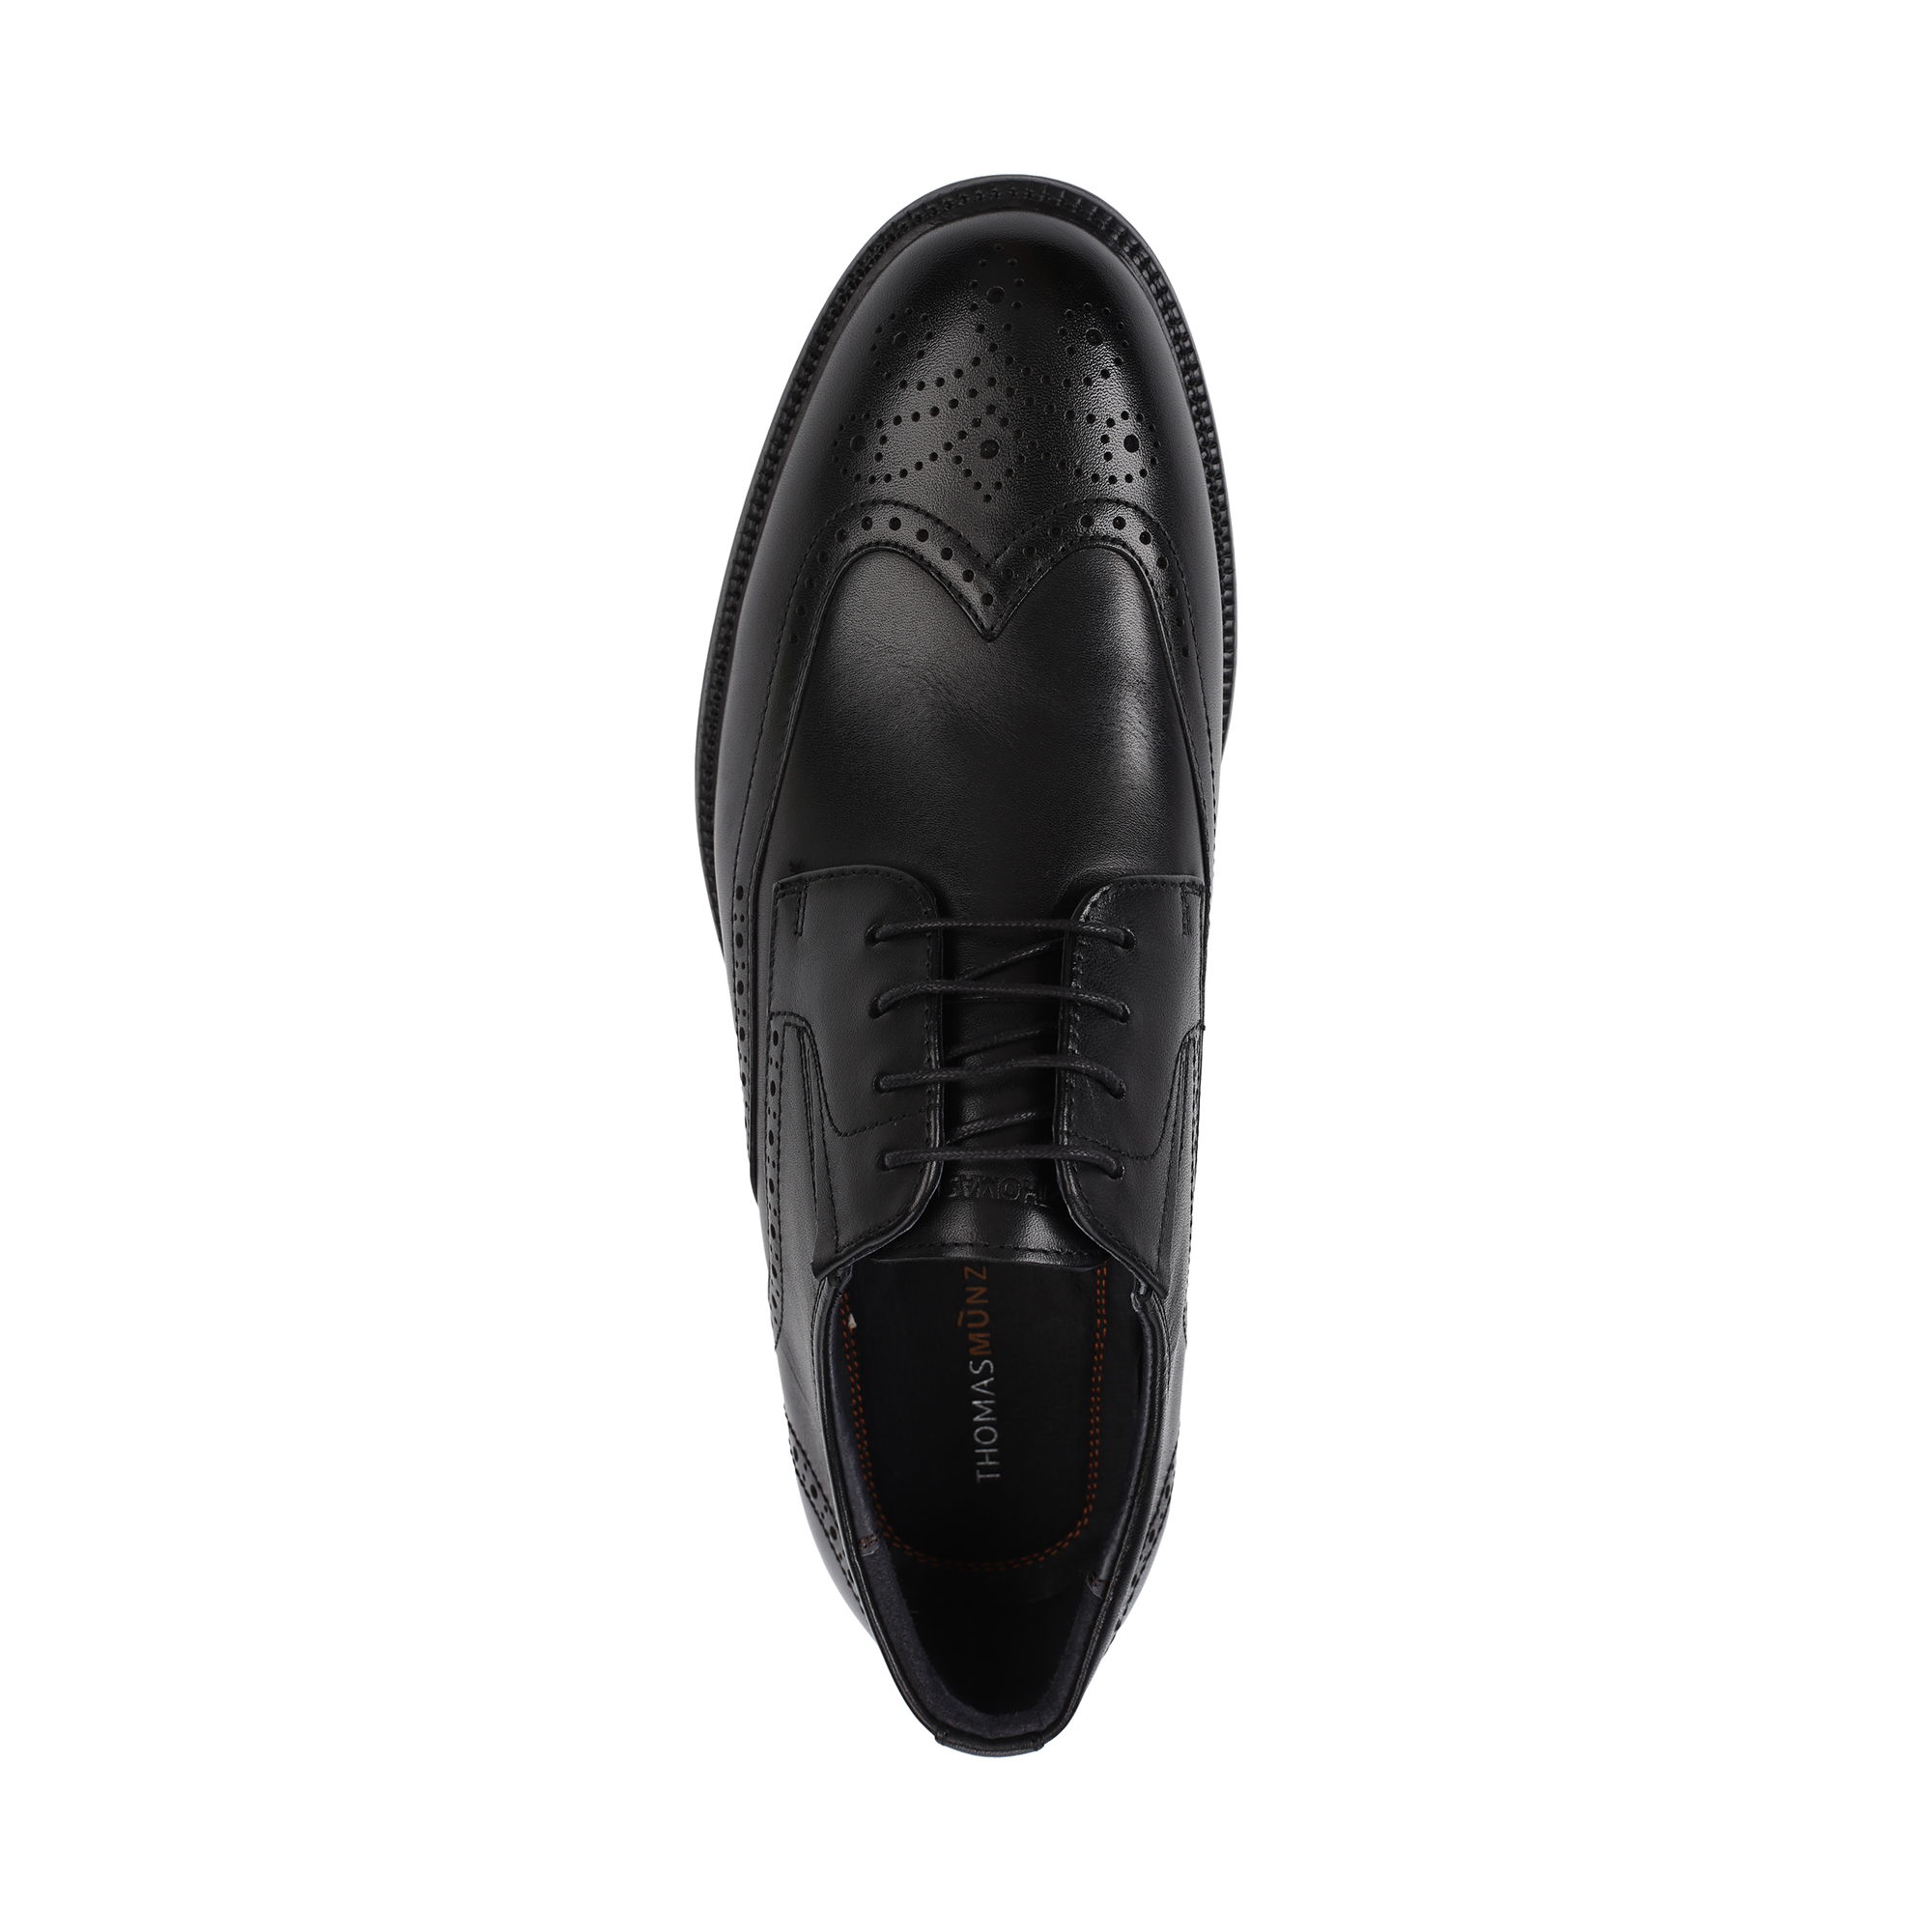 Туфли Thomas Munz 058-3414A-1102, цвет черный, размер 40 - фото 5